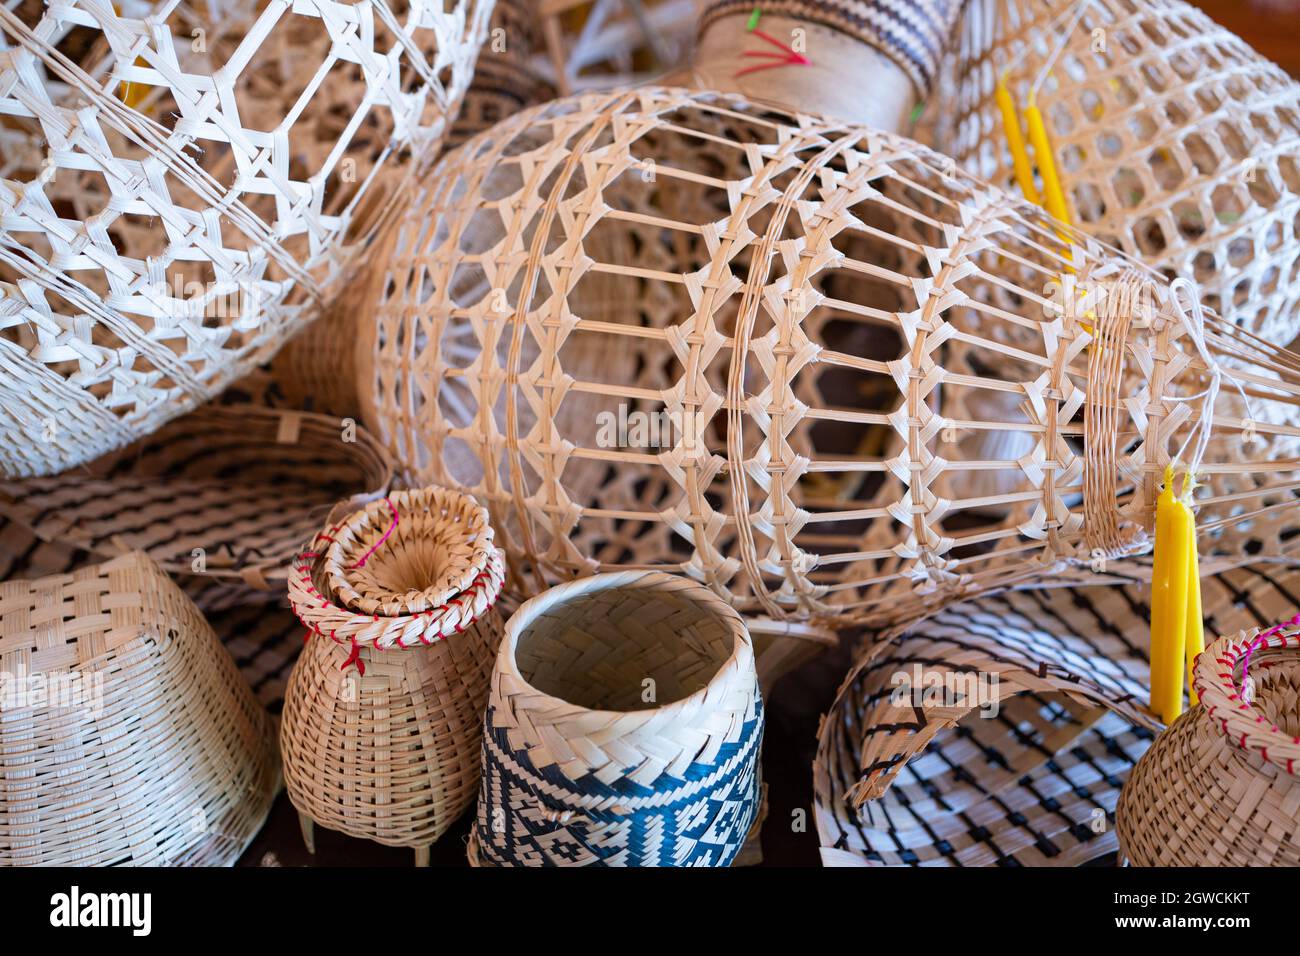 Objetos naturales a mano, productos hechos a mano de bambú que tejen la sabiduría local de los pueblos indígenas Fotografía de stock Alamy